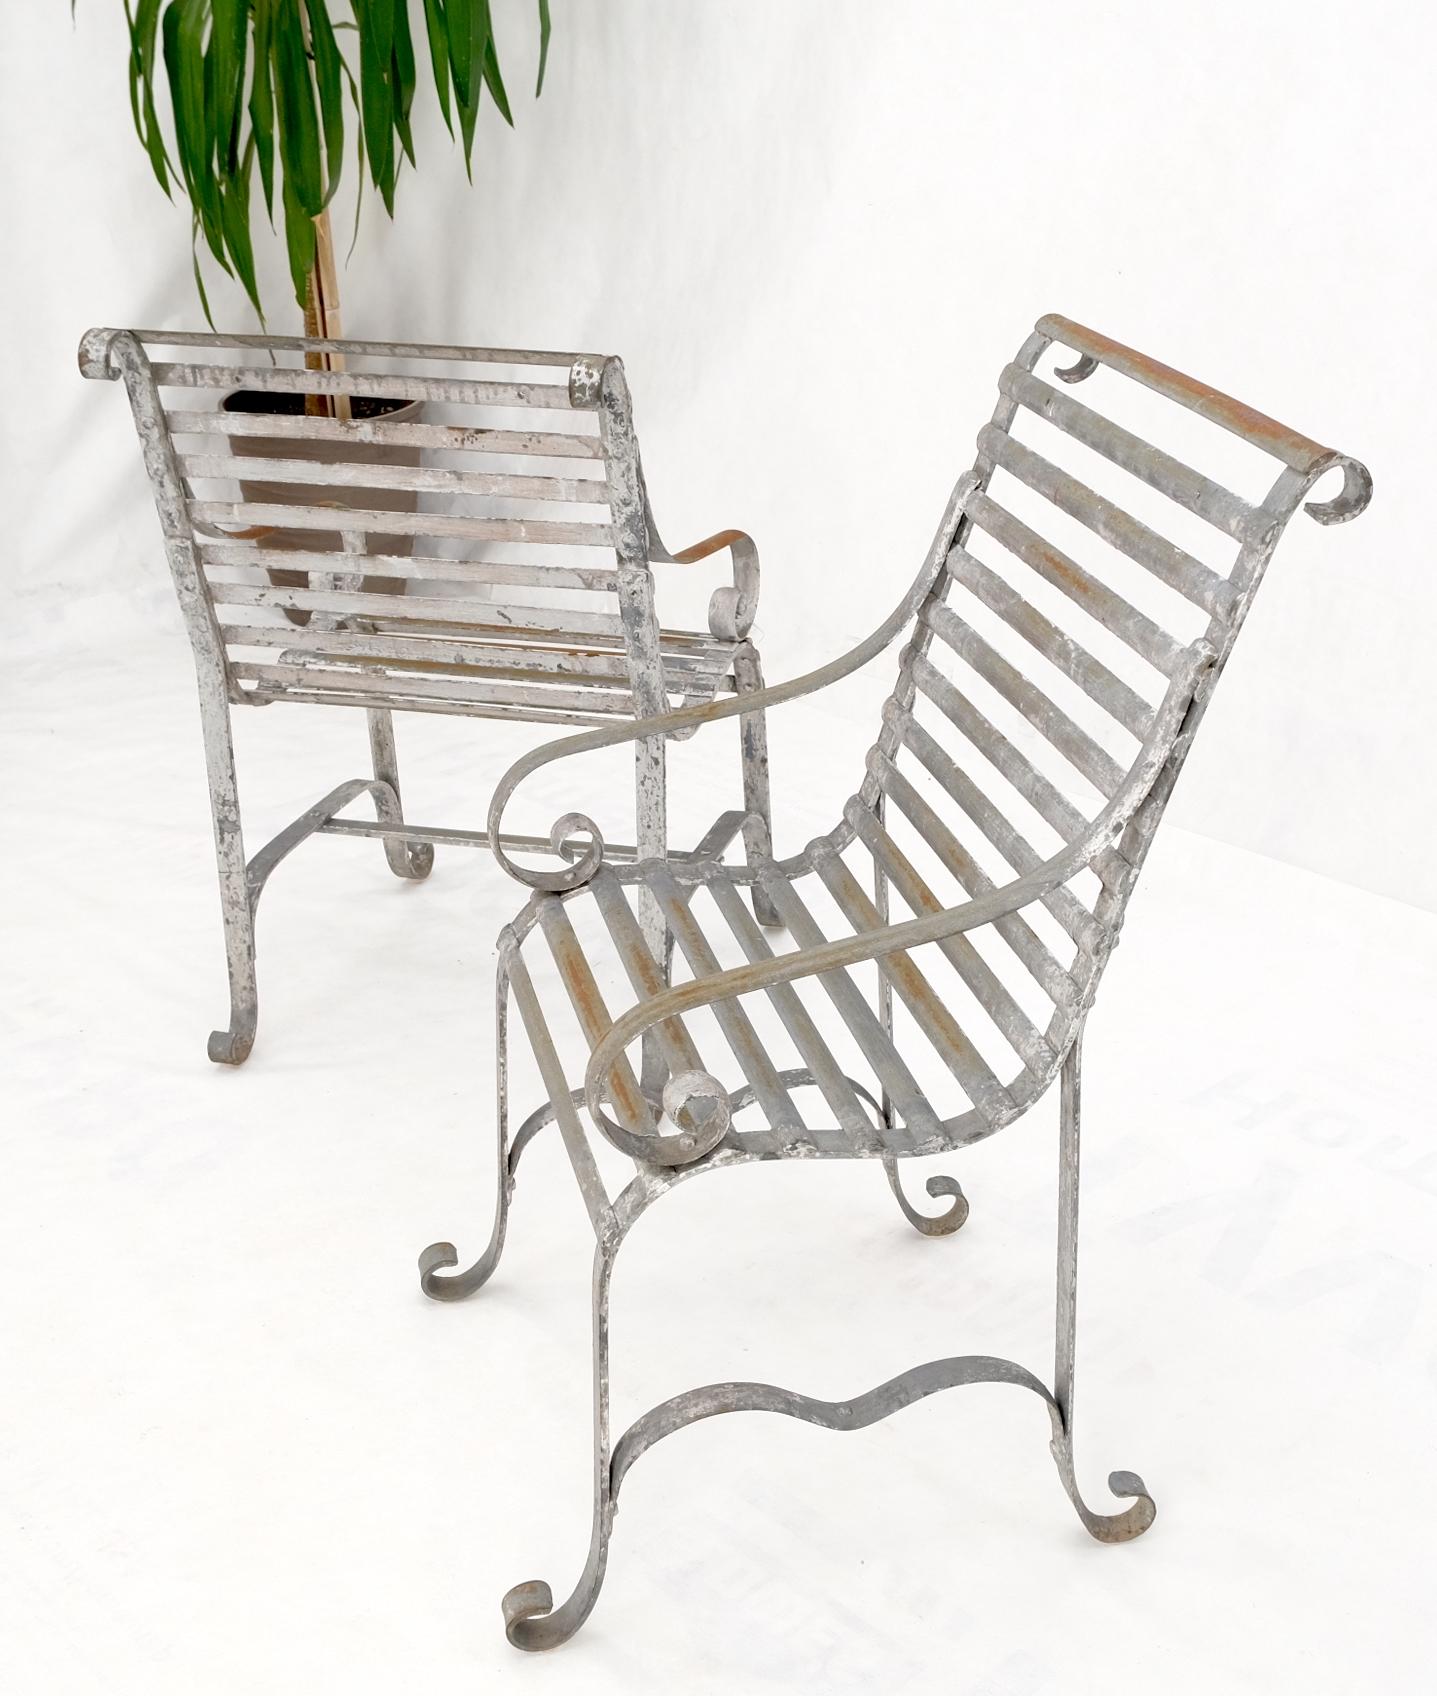 Schwere antike schmiedeeiserne Gartenstühle für sie und ihn.
Metallrippen Schlitze und Nieten Design, gut aussehende Form.